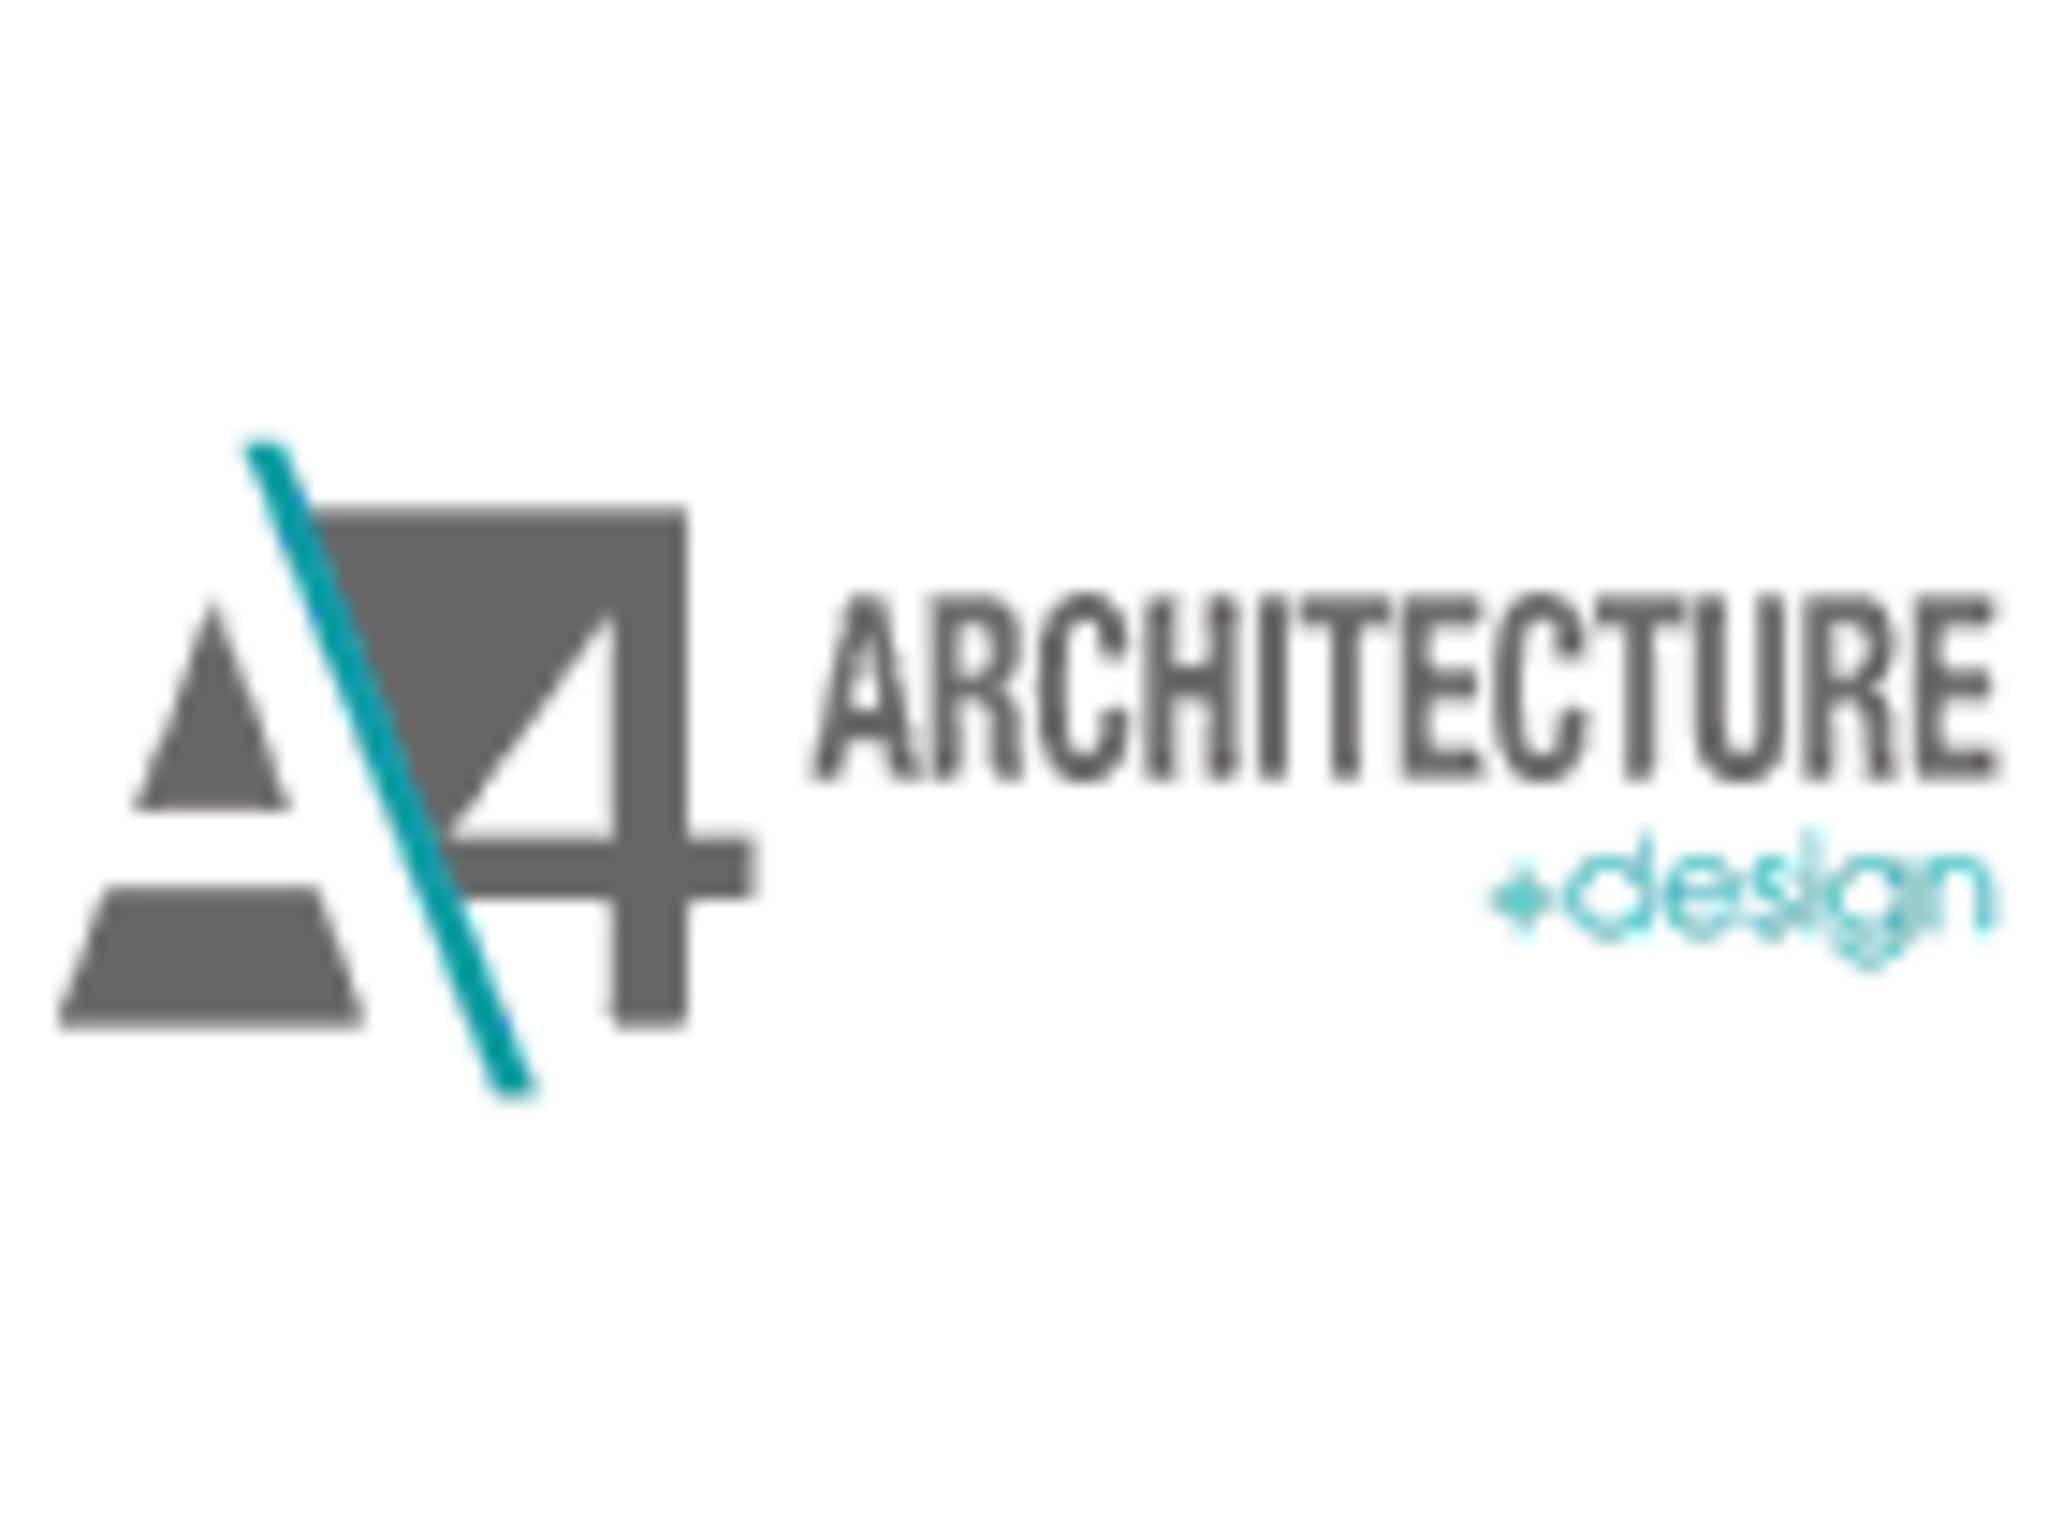 photo A4 Architecture Design Inc